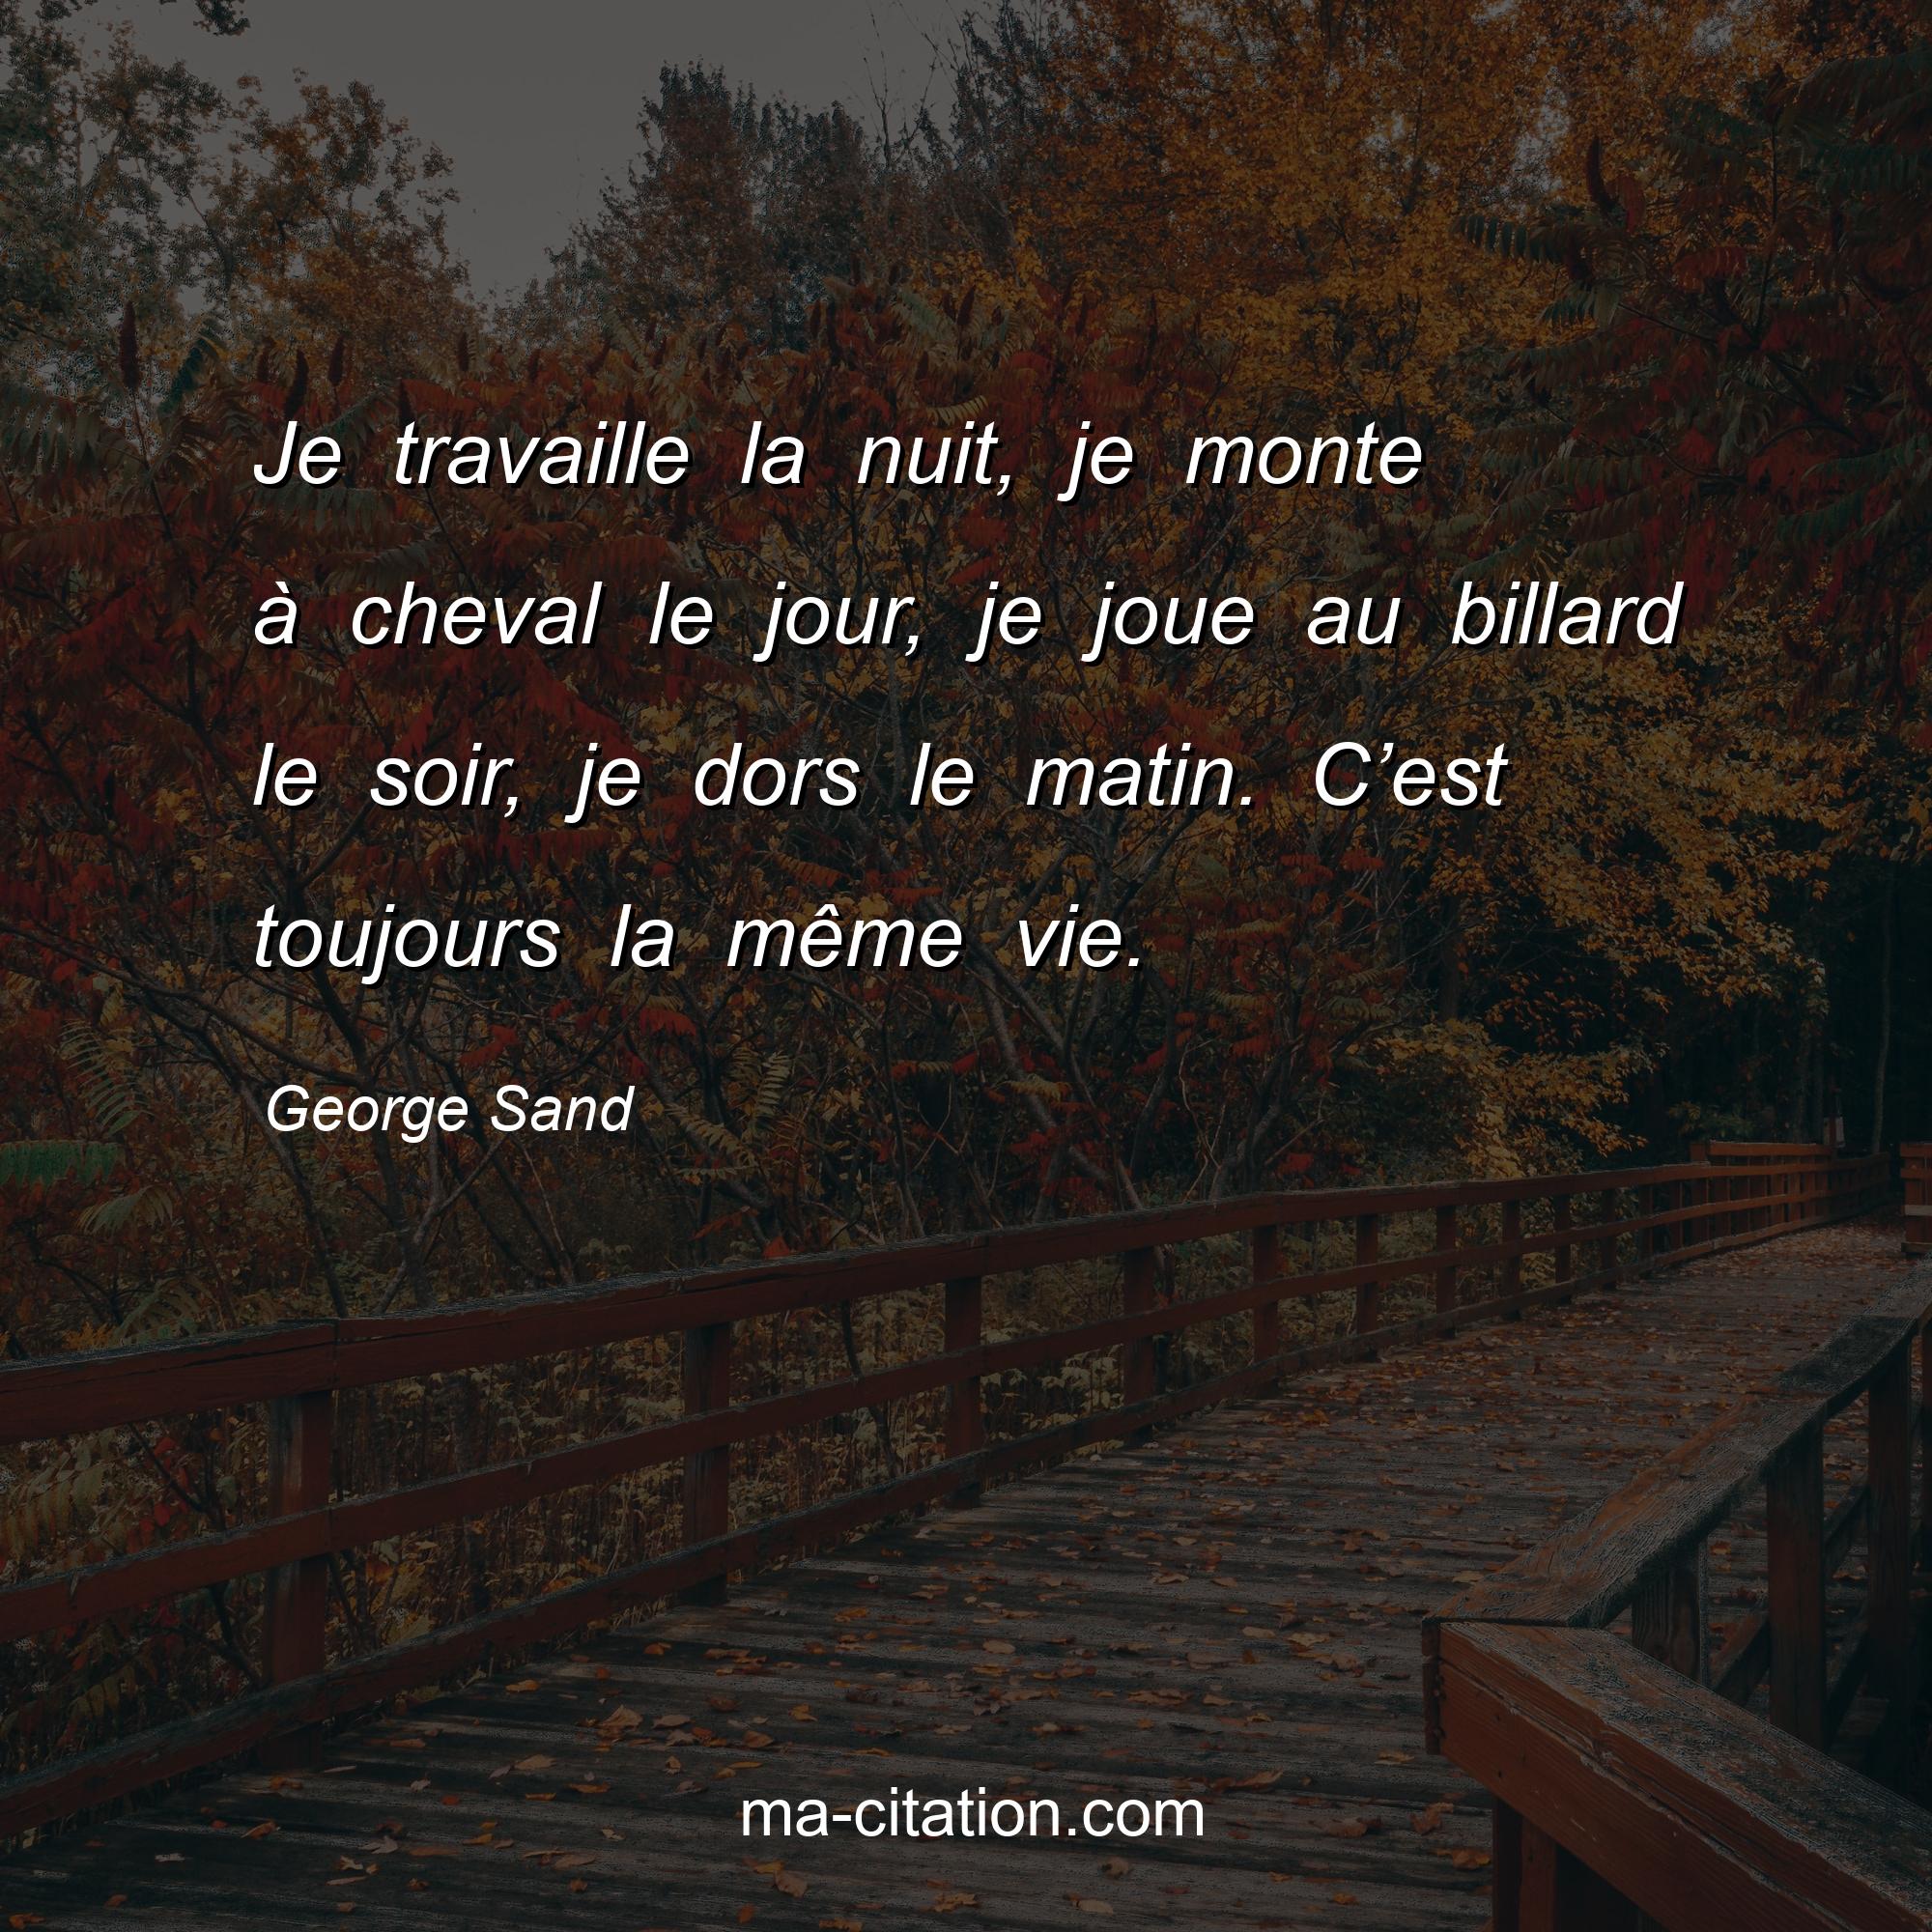 George Sand : Je travaille la nuit, je monte à cheval le jour, je joue au billard le soir, je dors le matin. C’est toujours la même vie.